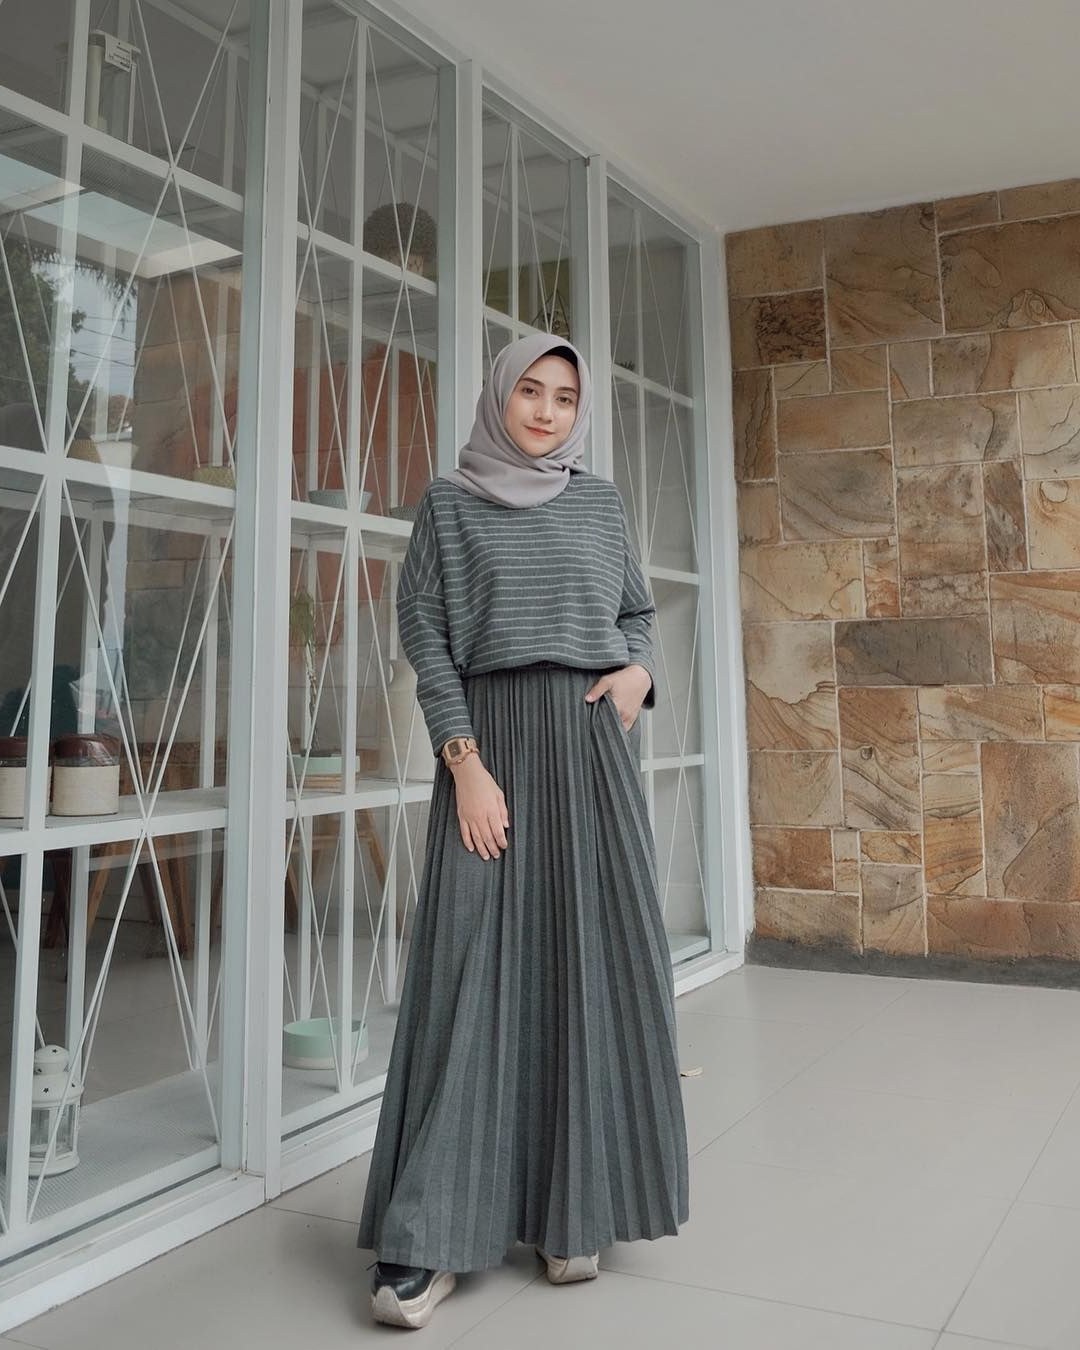 Design Model Baju Lebaran 2019 Terbaru Fmdf Baju Muslim Lebaran Terbaru 2019 Dengan Gambar